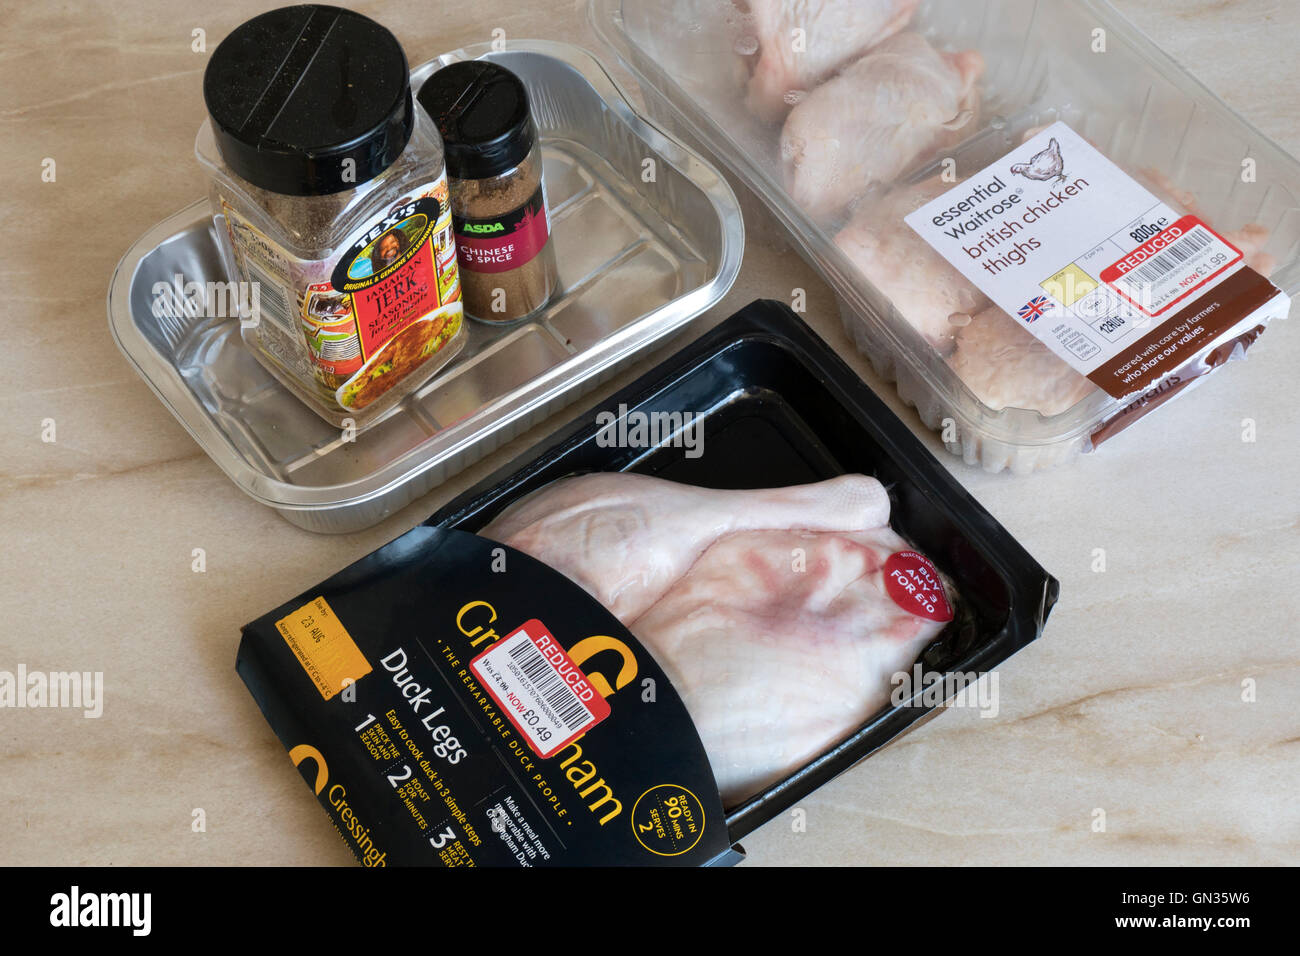 Couper les cuisses de canard alimentaire prix épices cuisses de poulet plan de cuisine Banque D'Images